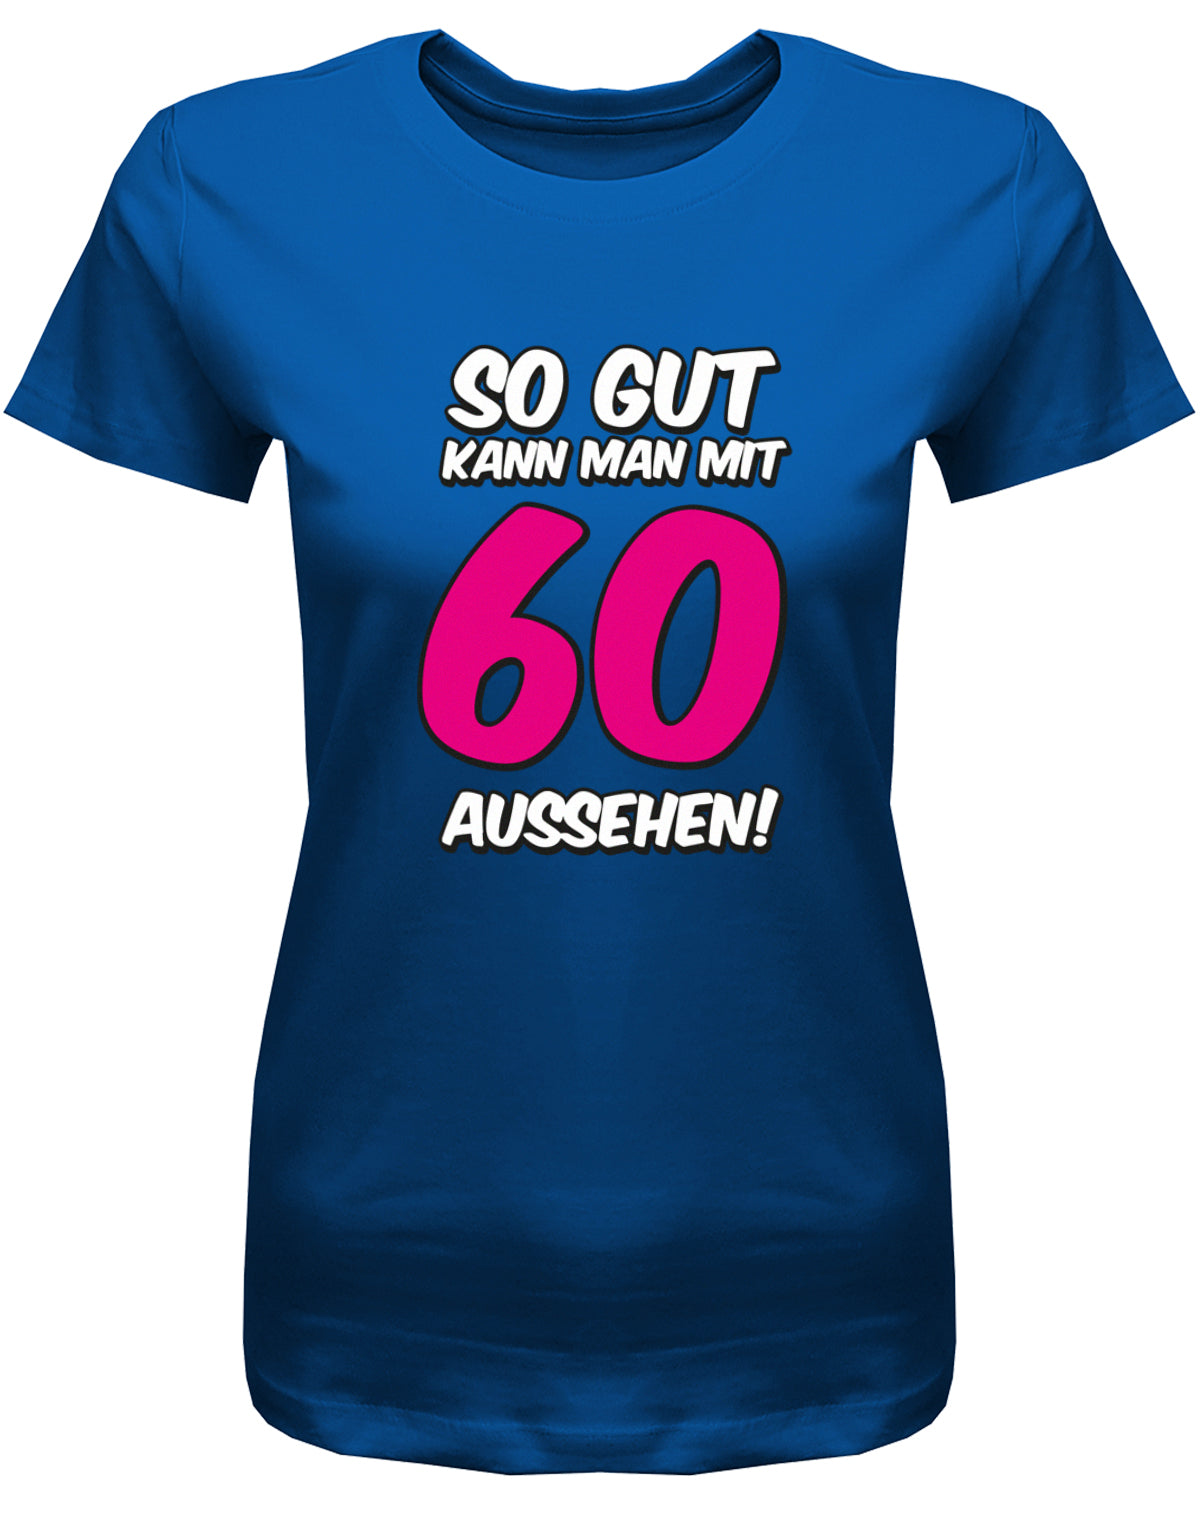 Lustiges T-Shirt zum 60 Geburtstag für die Frau Bedruckt mit So gut kann man mit 60 aussehen. Große 60 in Pink. Royalblau